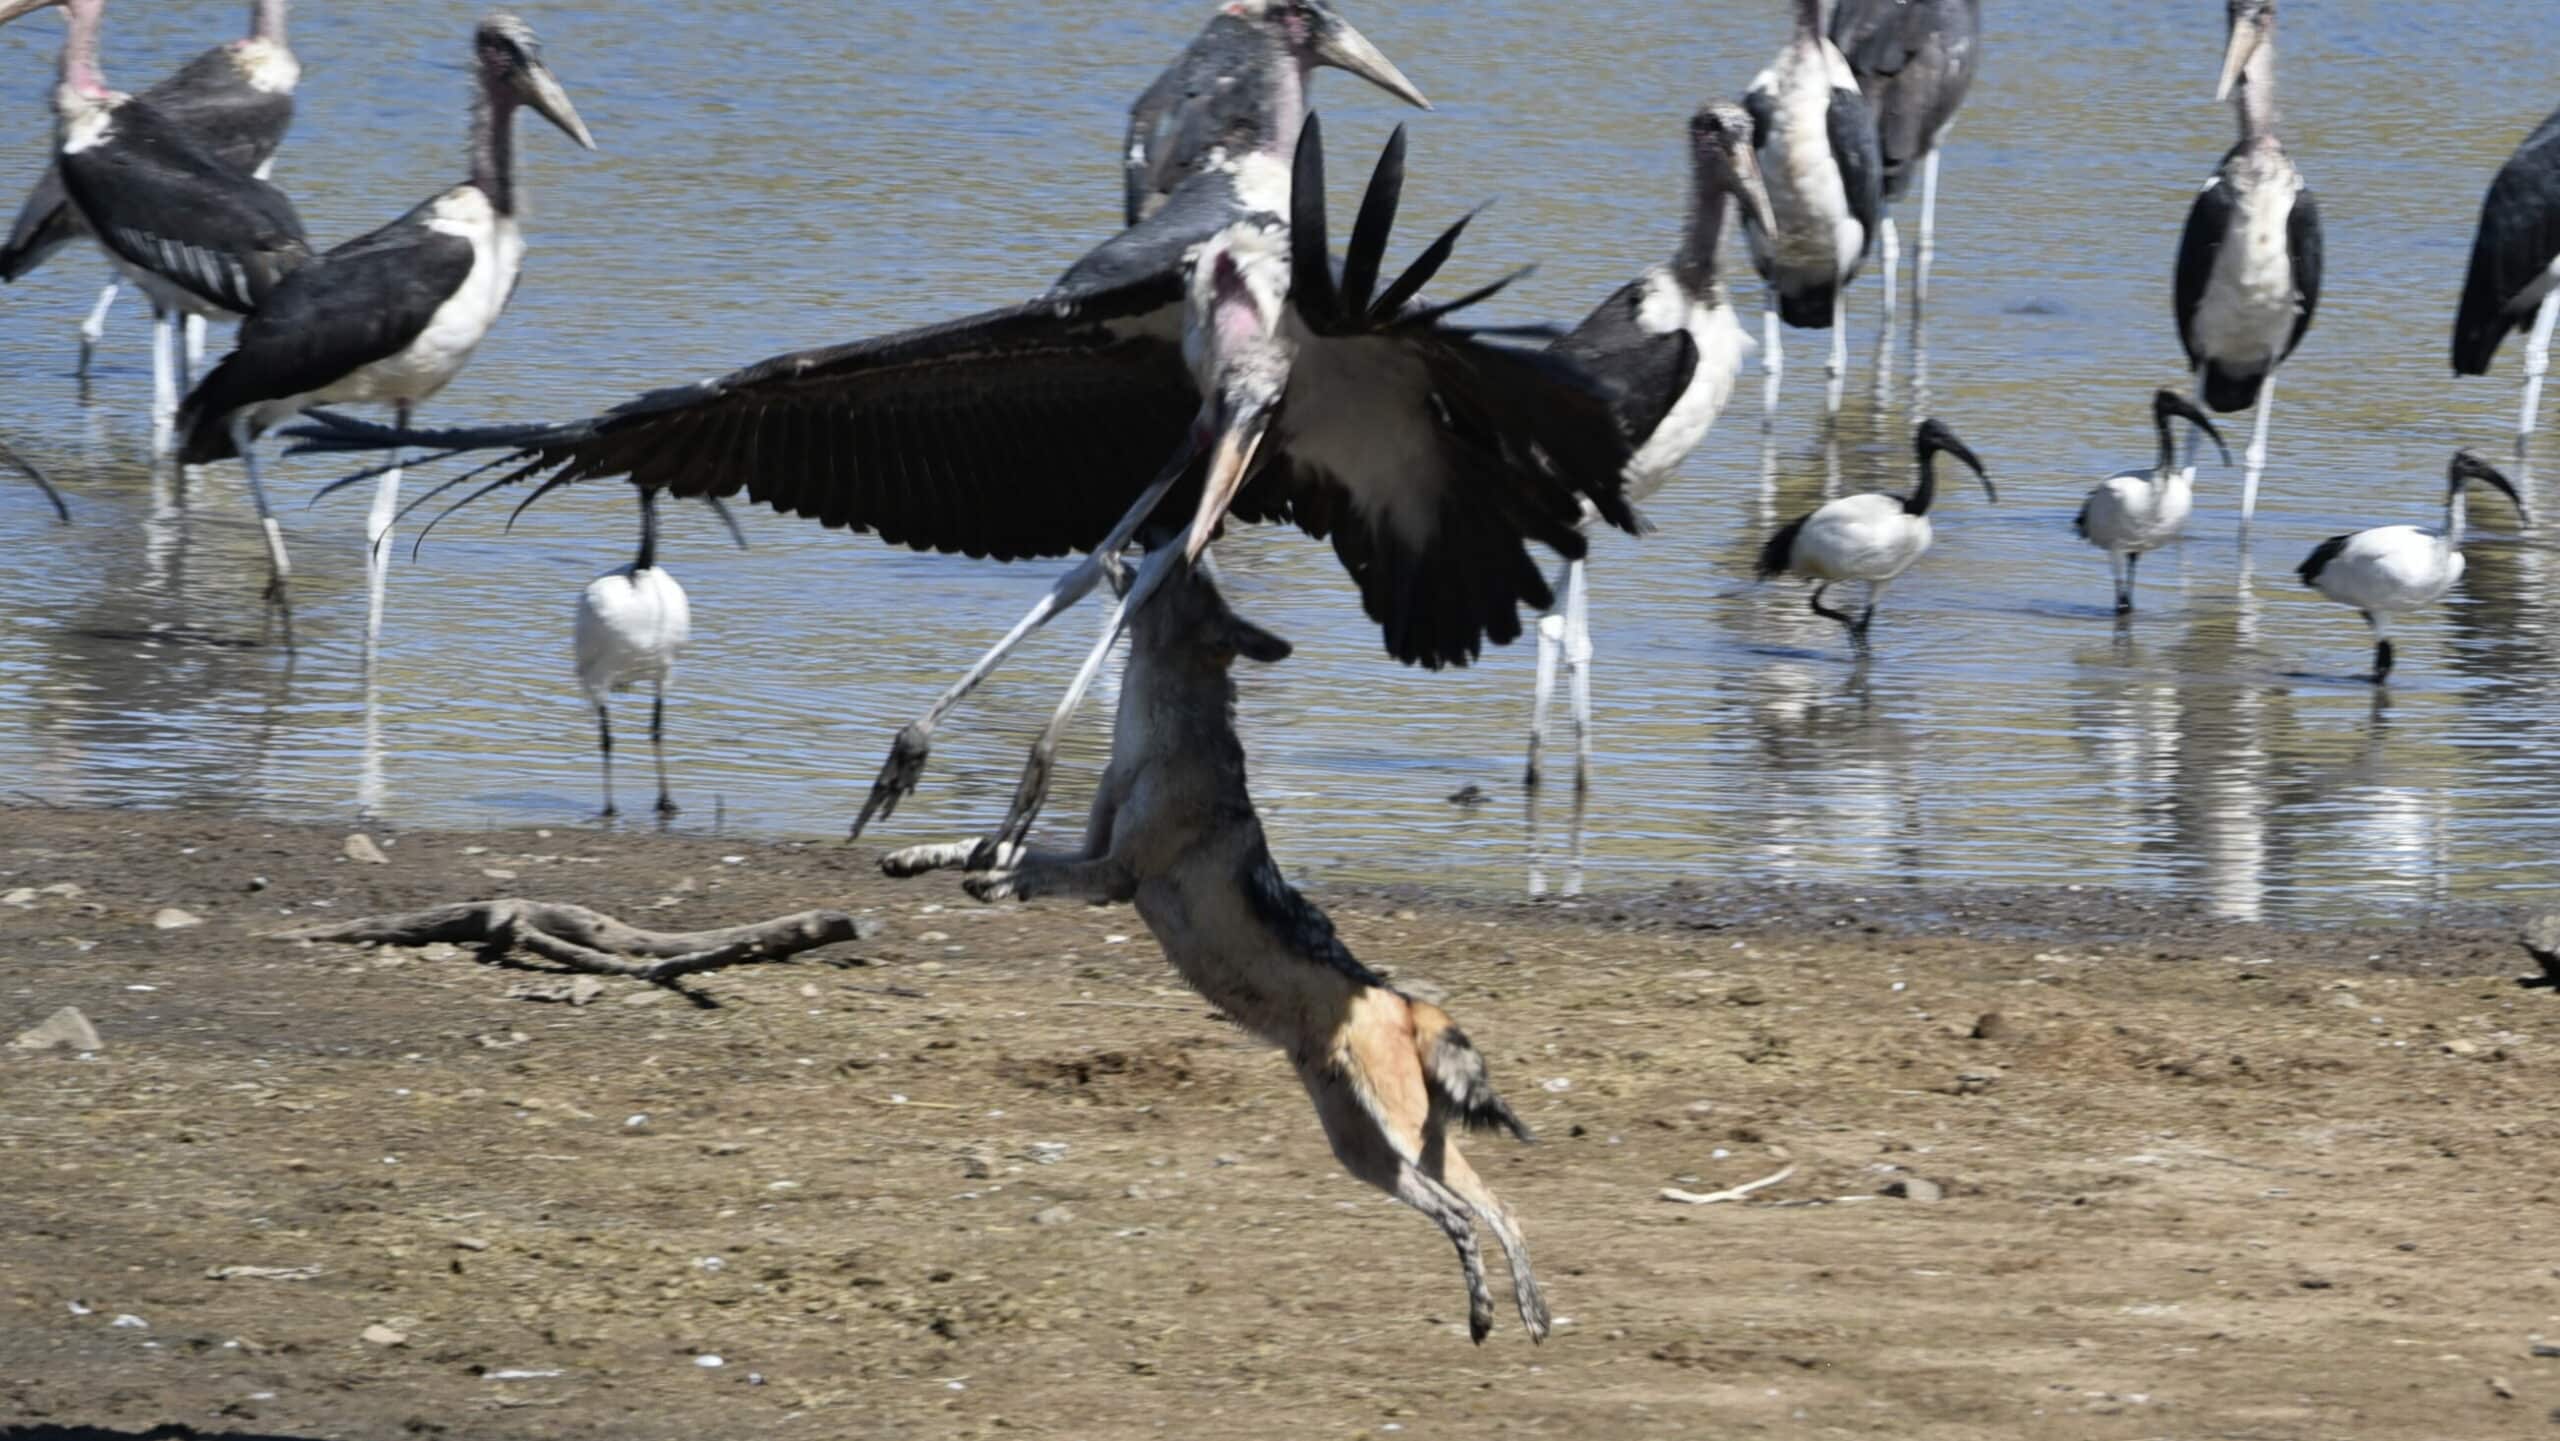 Jackal and marabou stork